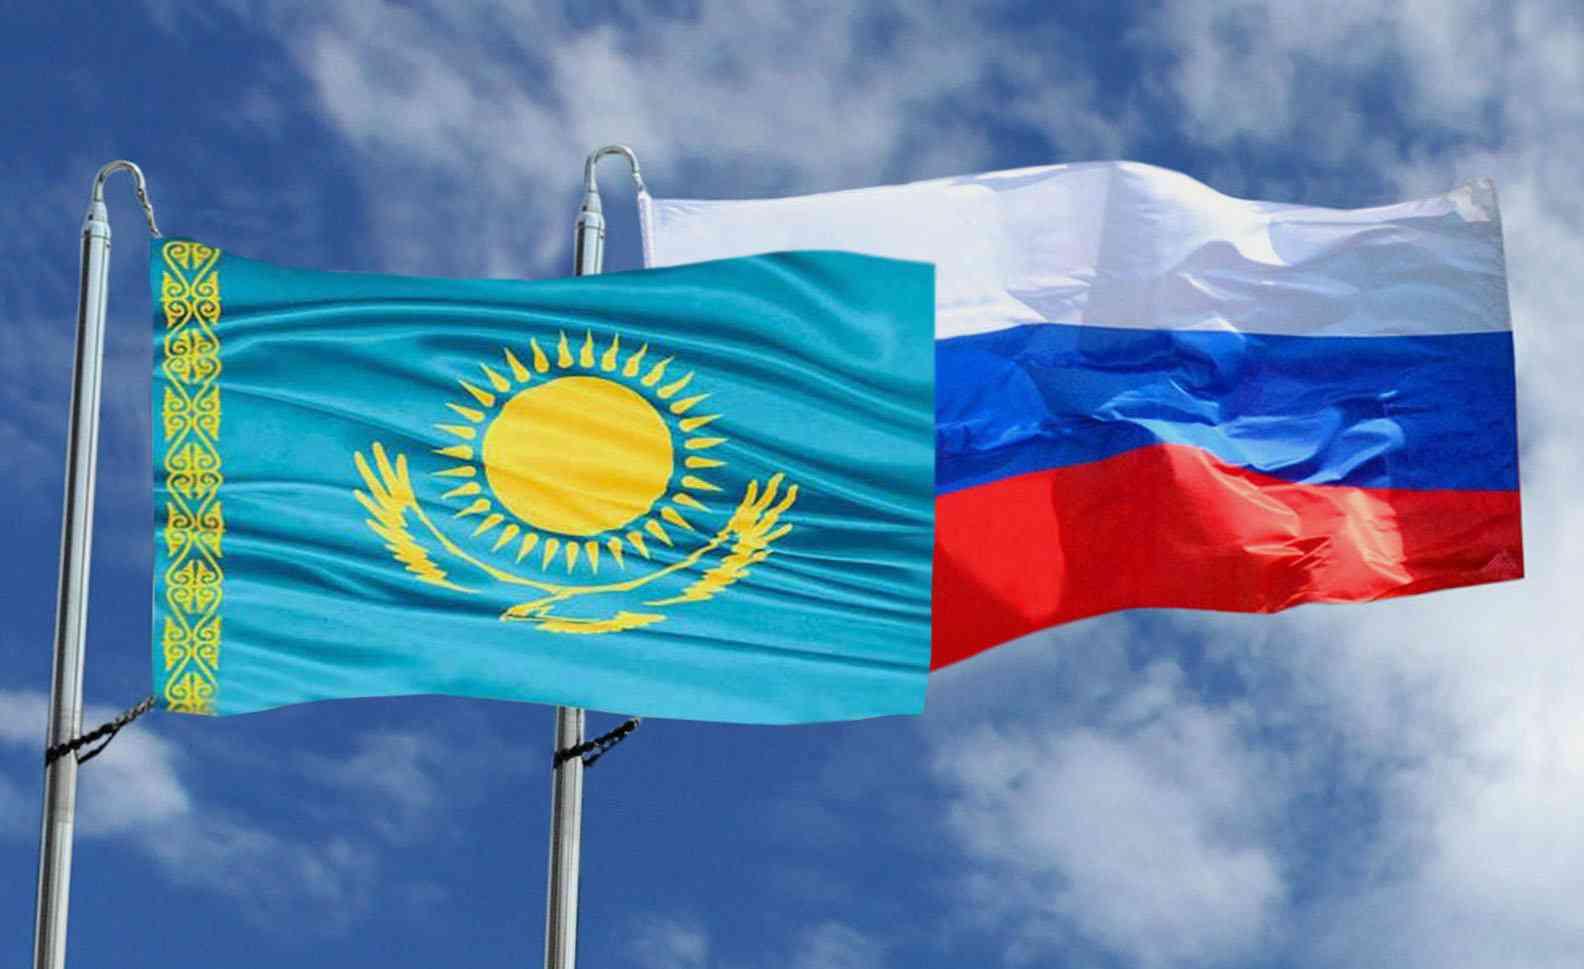 Форум межрегионального сотрудничества РФ и Казахстана пройдет в Омске 6-7 ноября